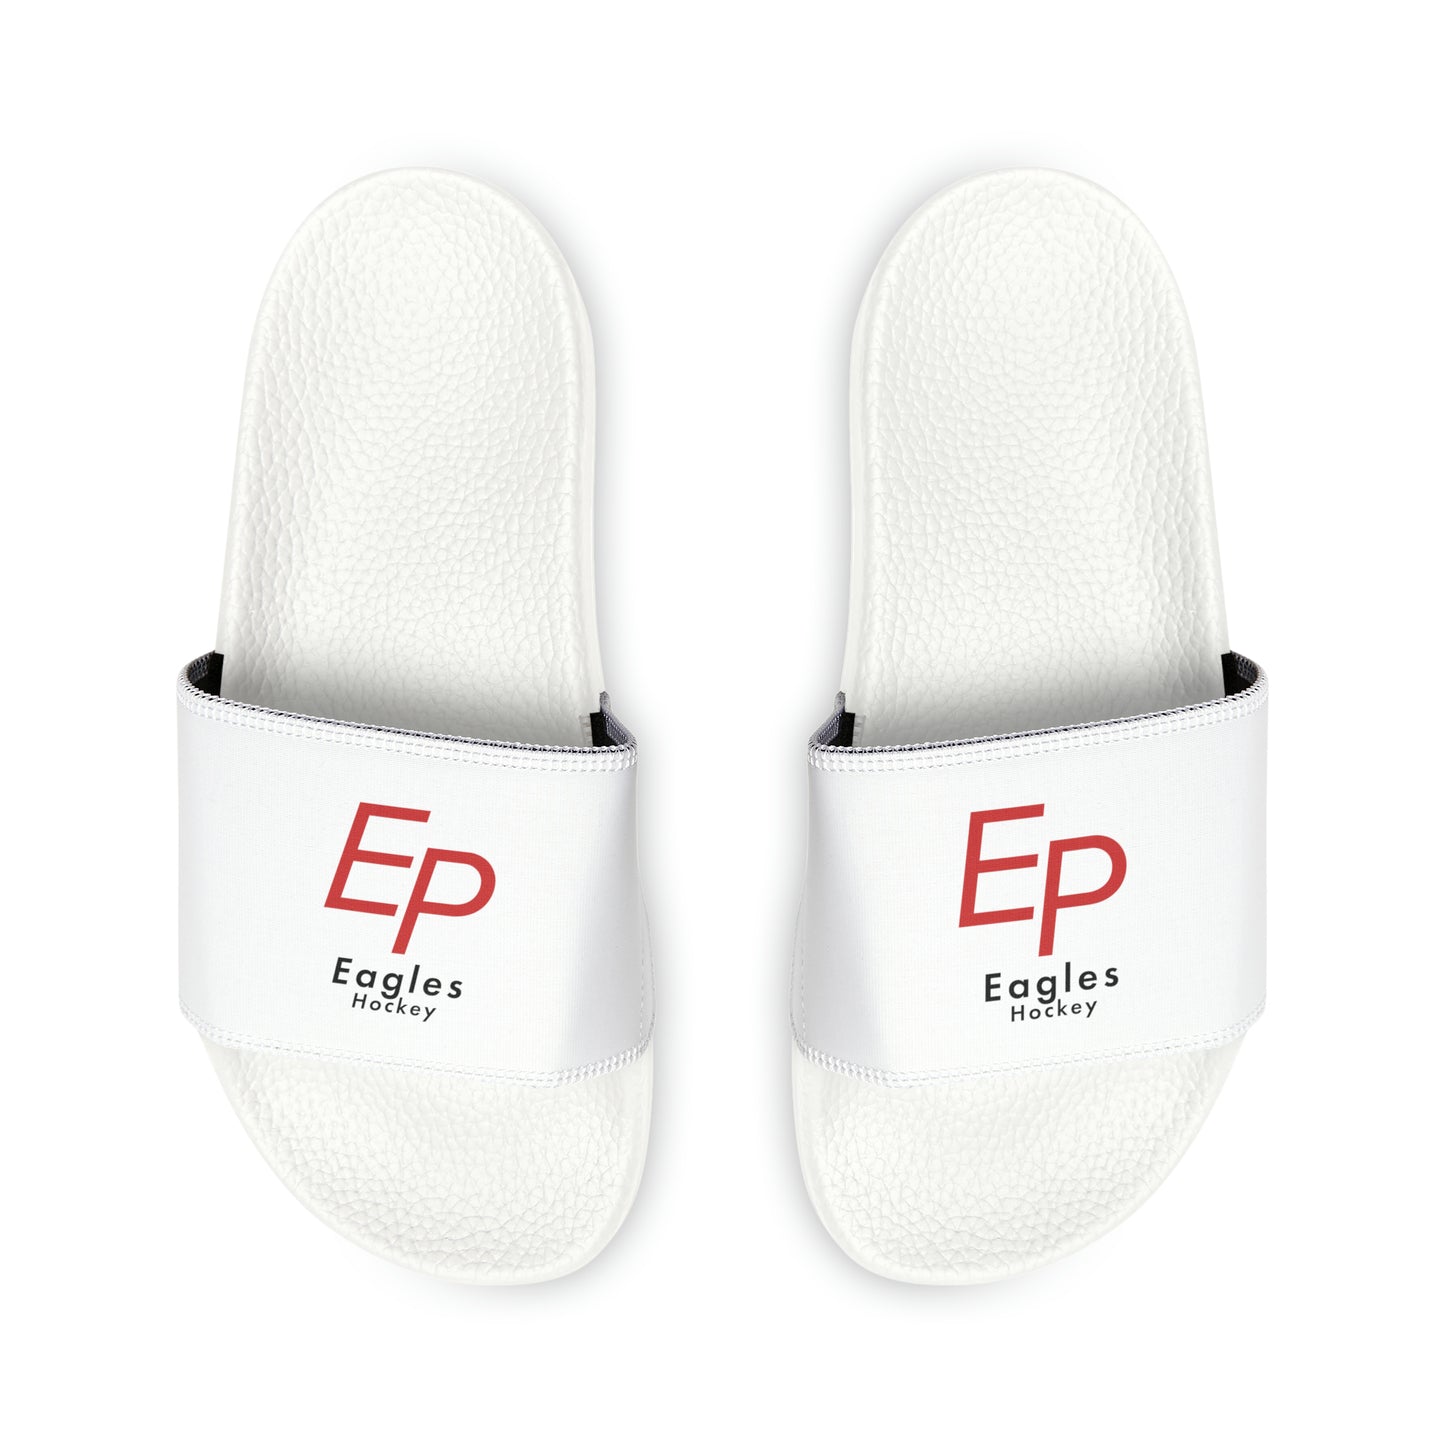 Eden Prairie Men's PU Slide Sandals